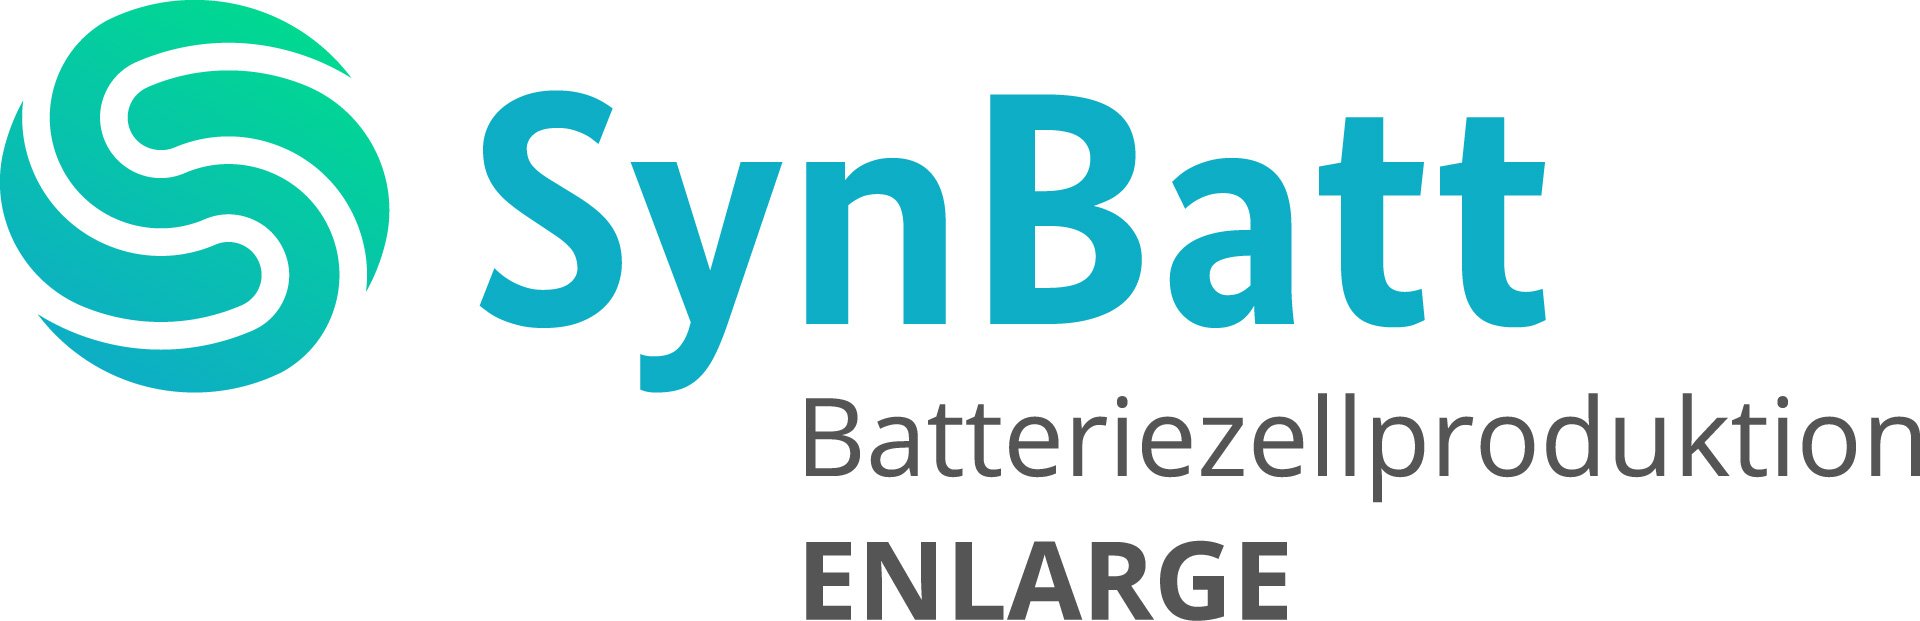 Das Bild zeigt das Logo des ENLRAGE Projekts